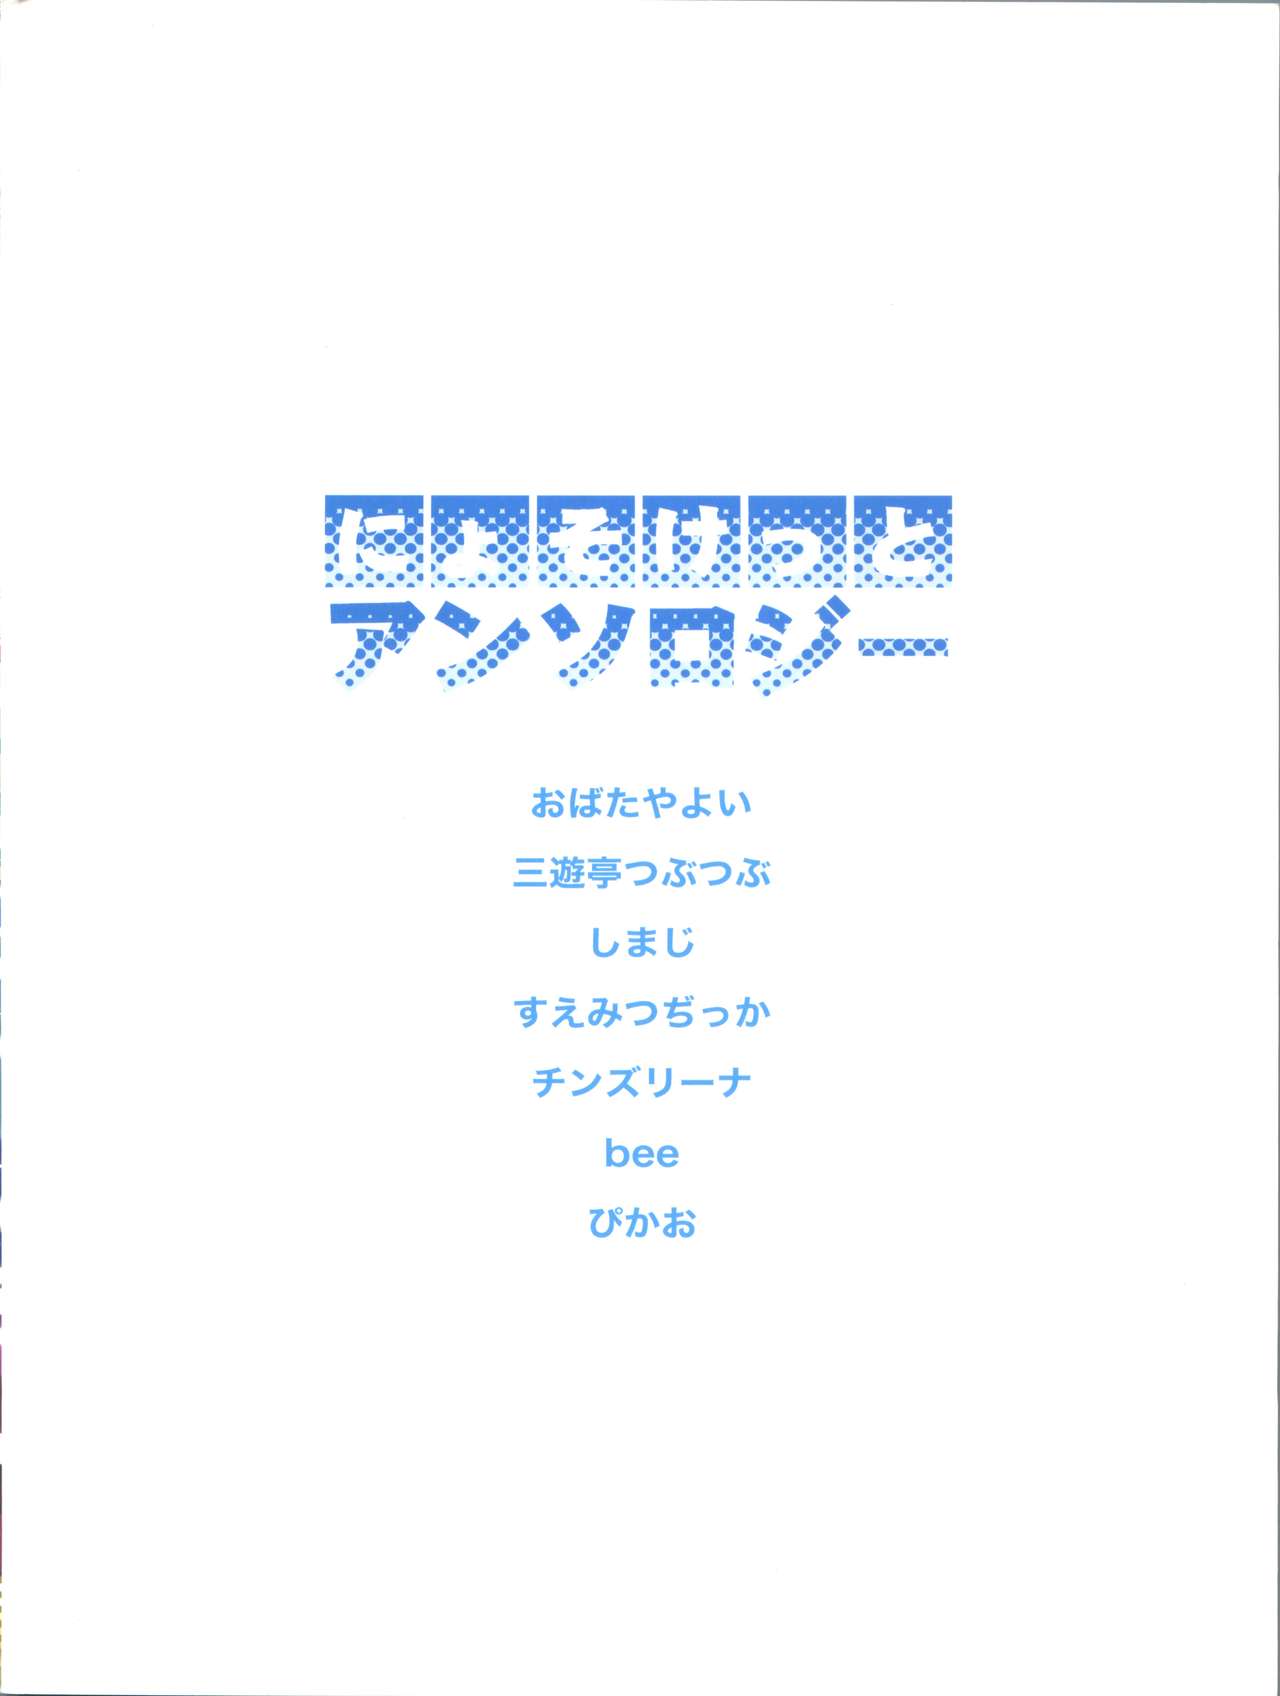 (Nyosoket!) [Scratch Jikkou Iinkai (Various)] Nyosoket Anthology page 40 full